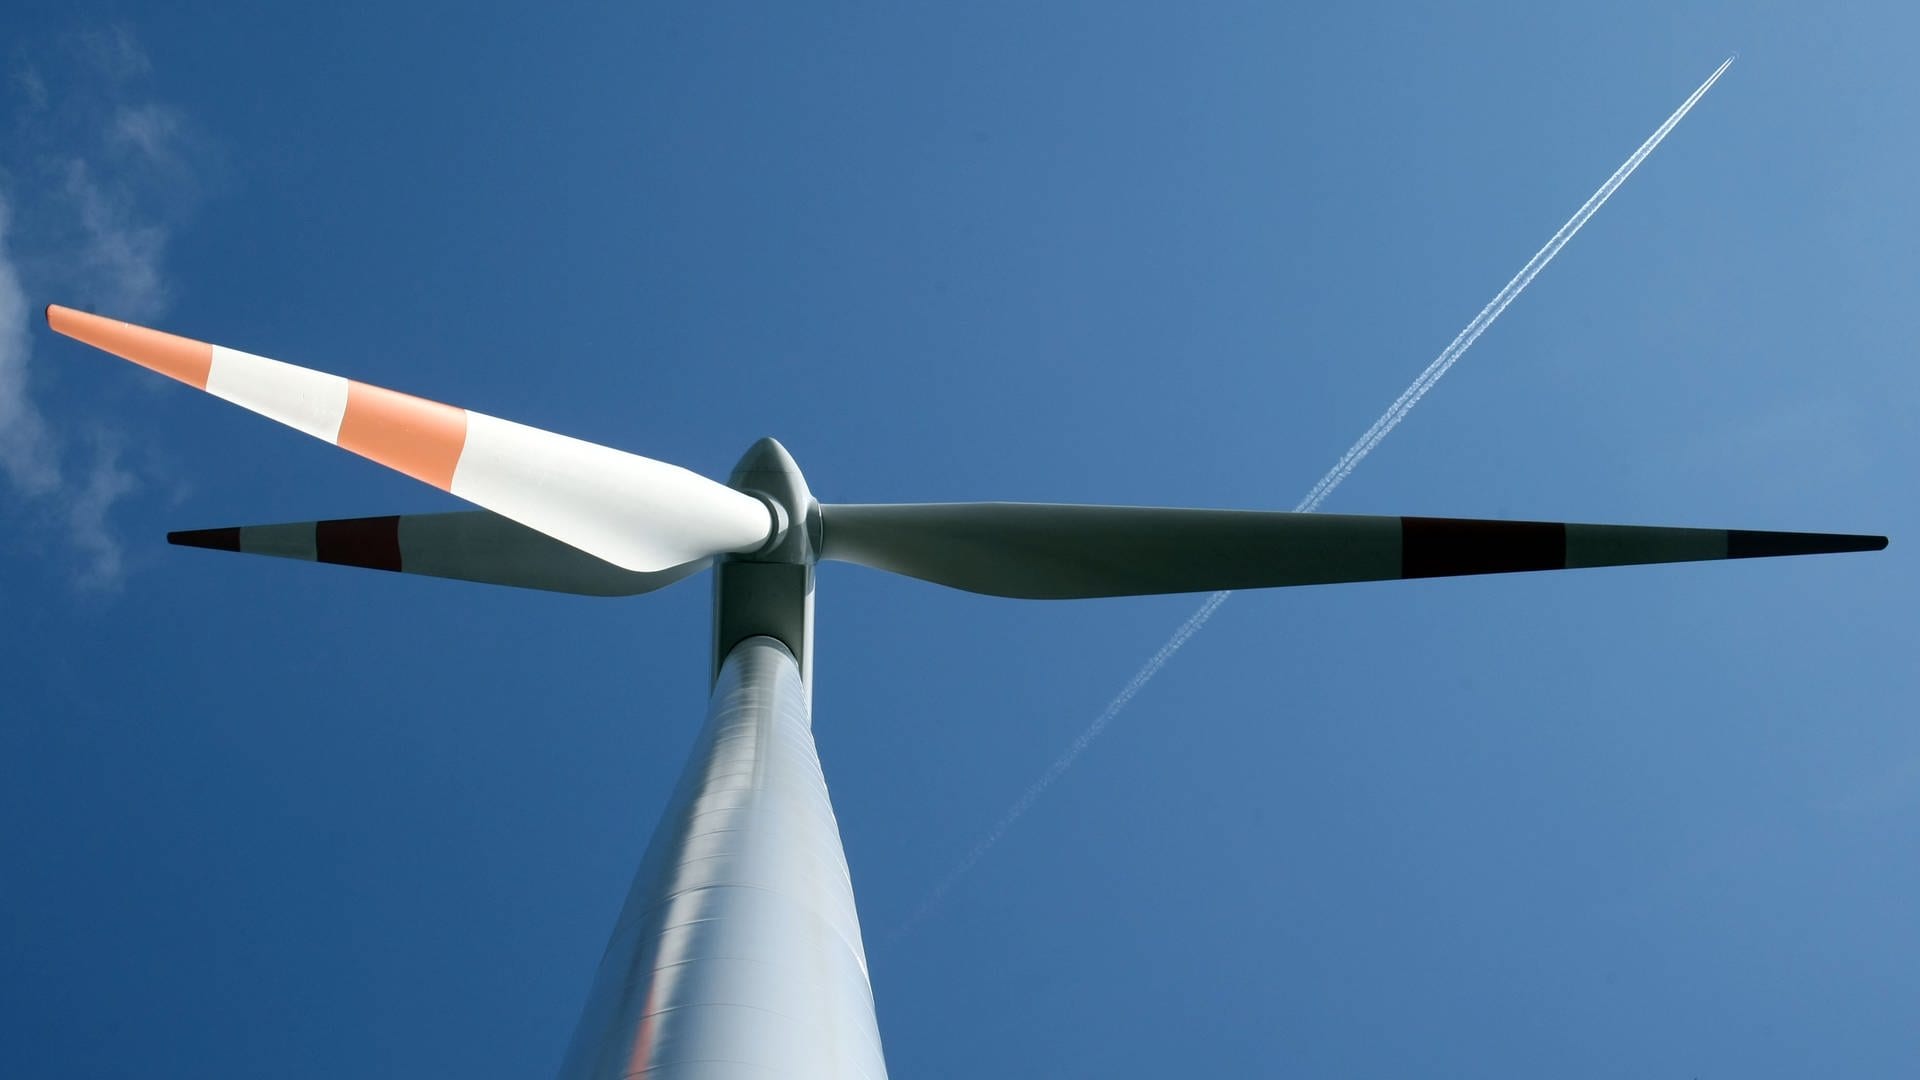 Wieso die Windkraft das Potenzial hat, "die Gesellschaft zu spalten"